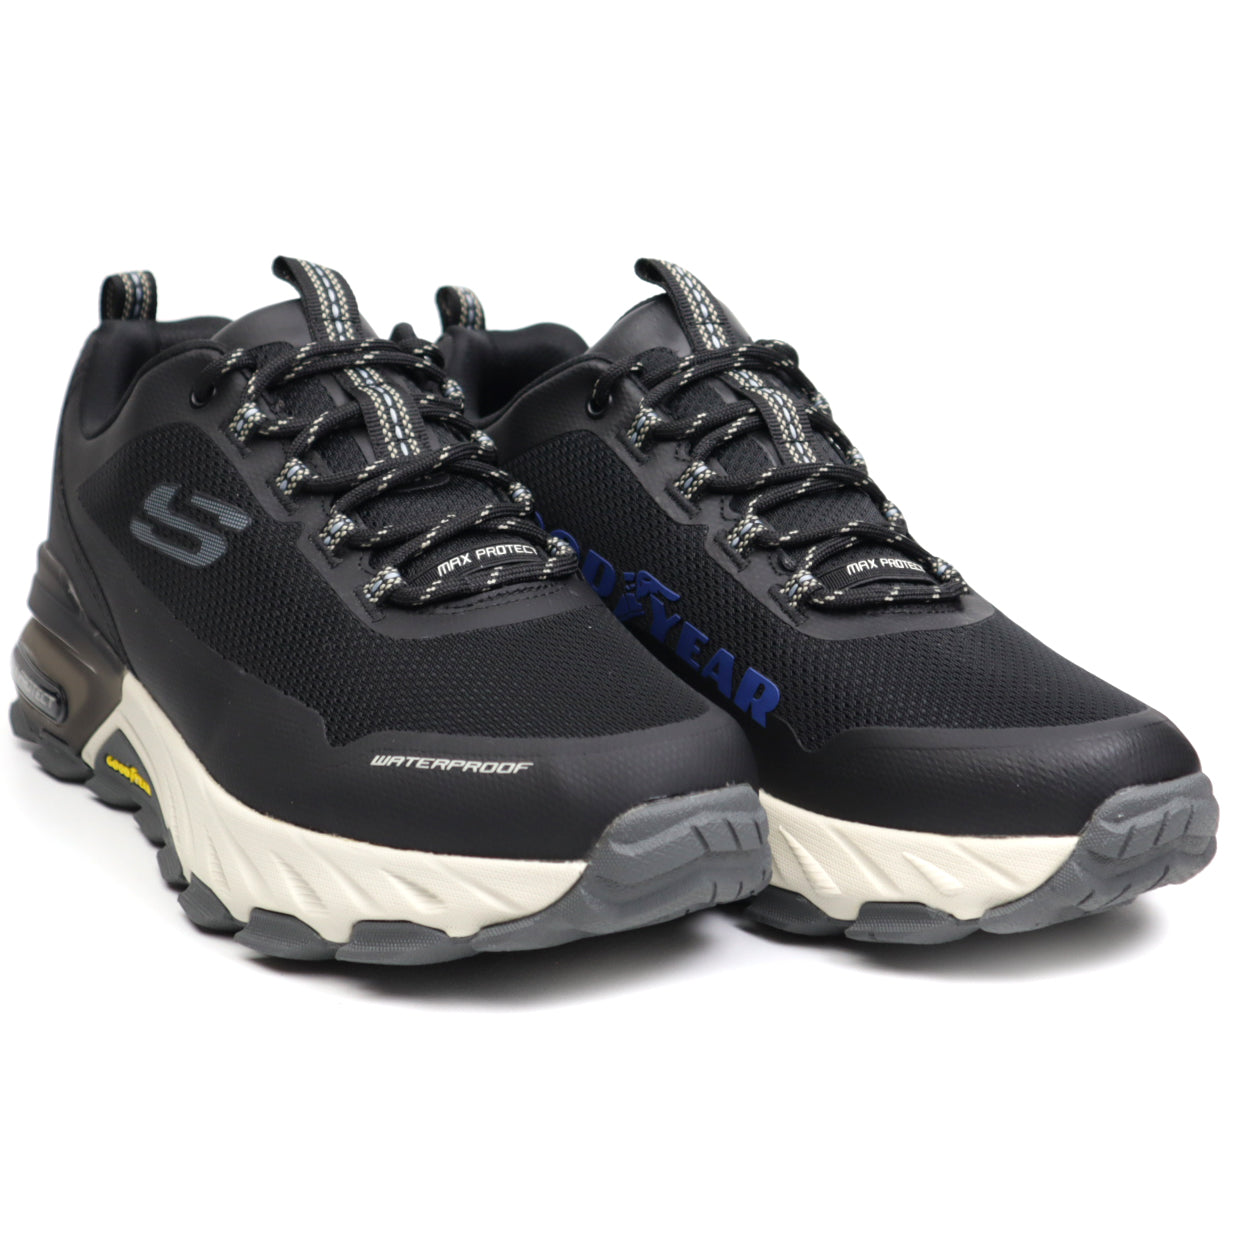 Skechers Pantofi barbati waterproof 237304 Max Protect Fast Track BLACK/GRAY IB2304-BKGY